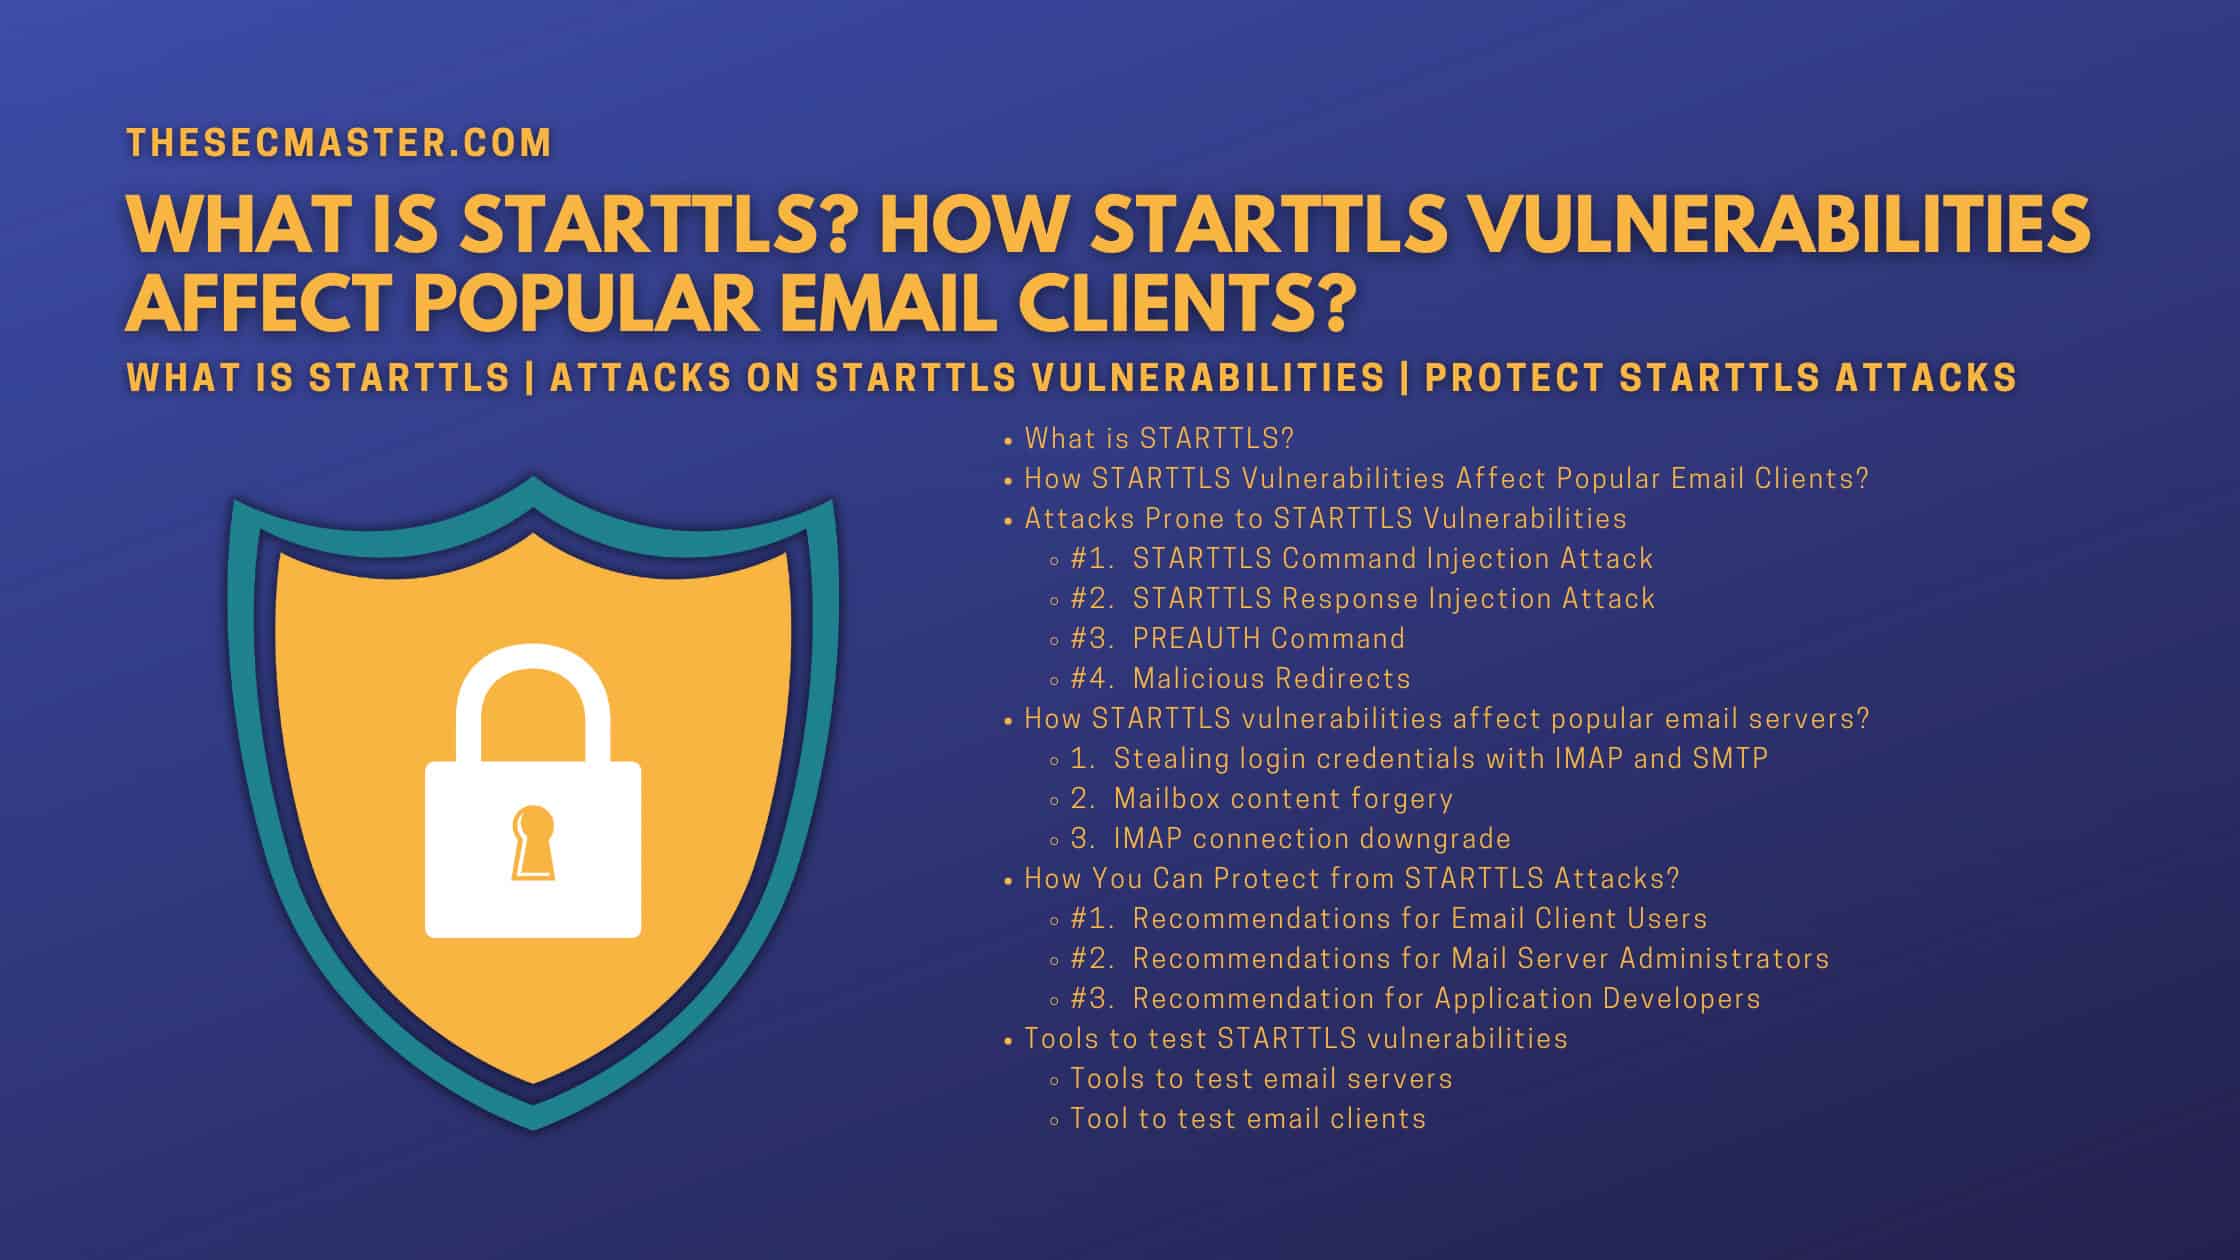 Starttls Vulnerabilities